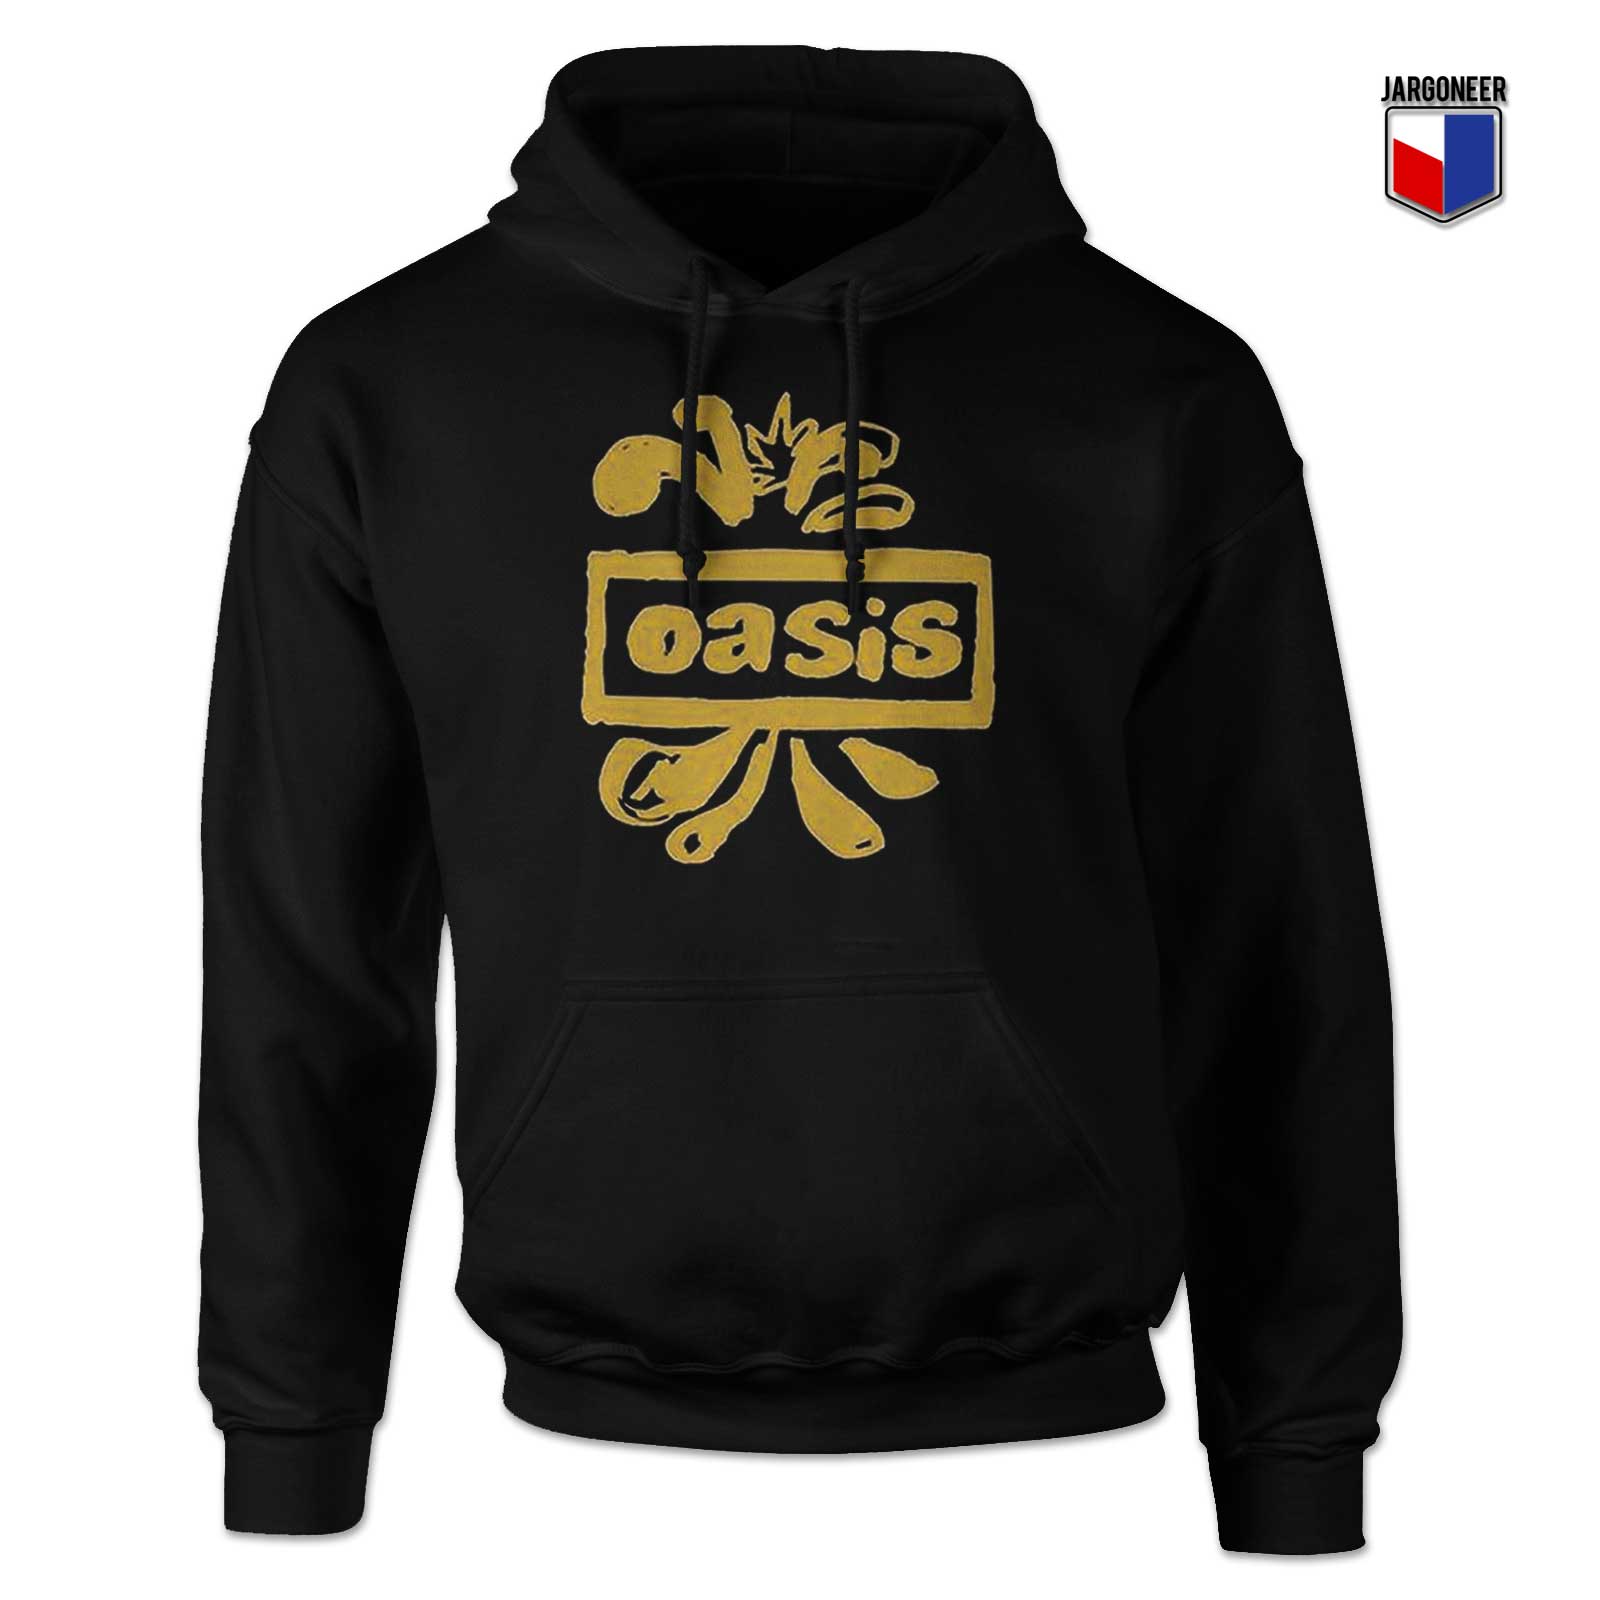 Oasis Decca Logo Hoodie - Shop Unique Graphic Cool Shirt Designs